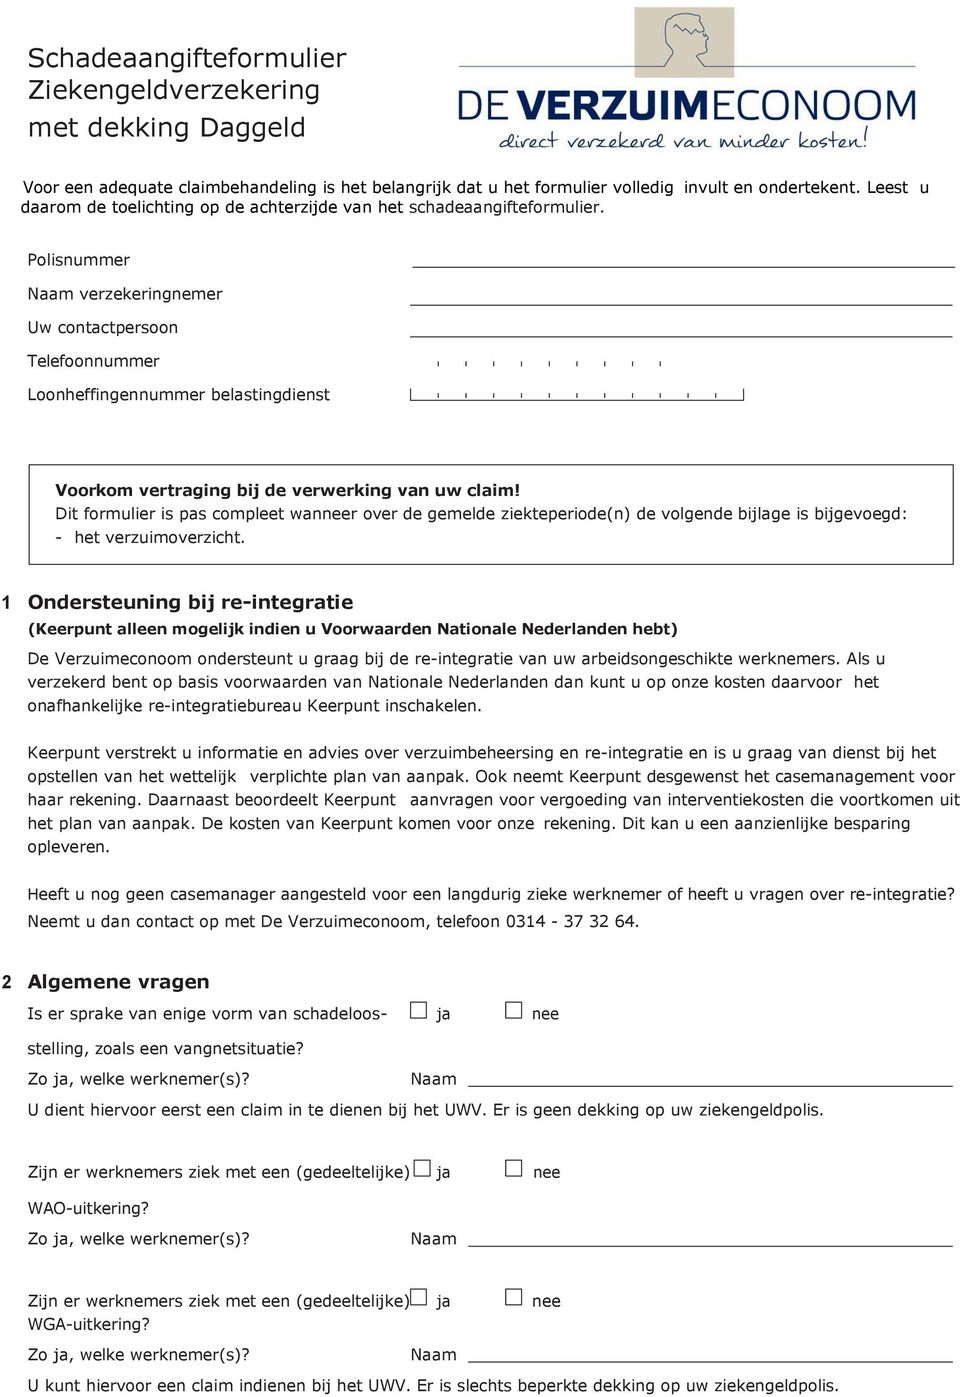 Polisnummer verzekeringnemer Uw contactpersoon Loonheffingennummer belastingdienst Voorkom vertraging bij de verwerking van uw claim!